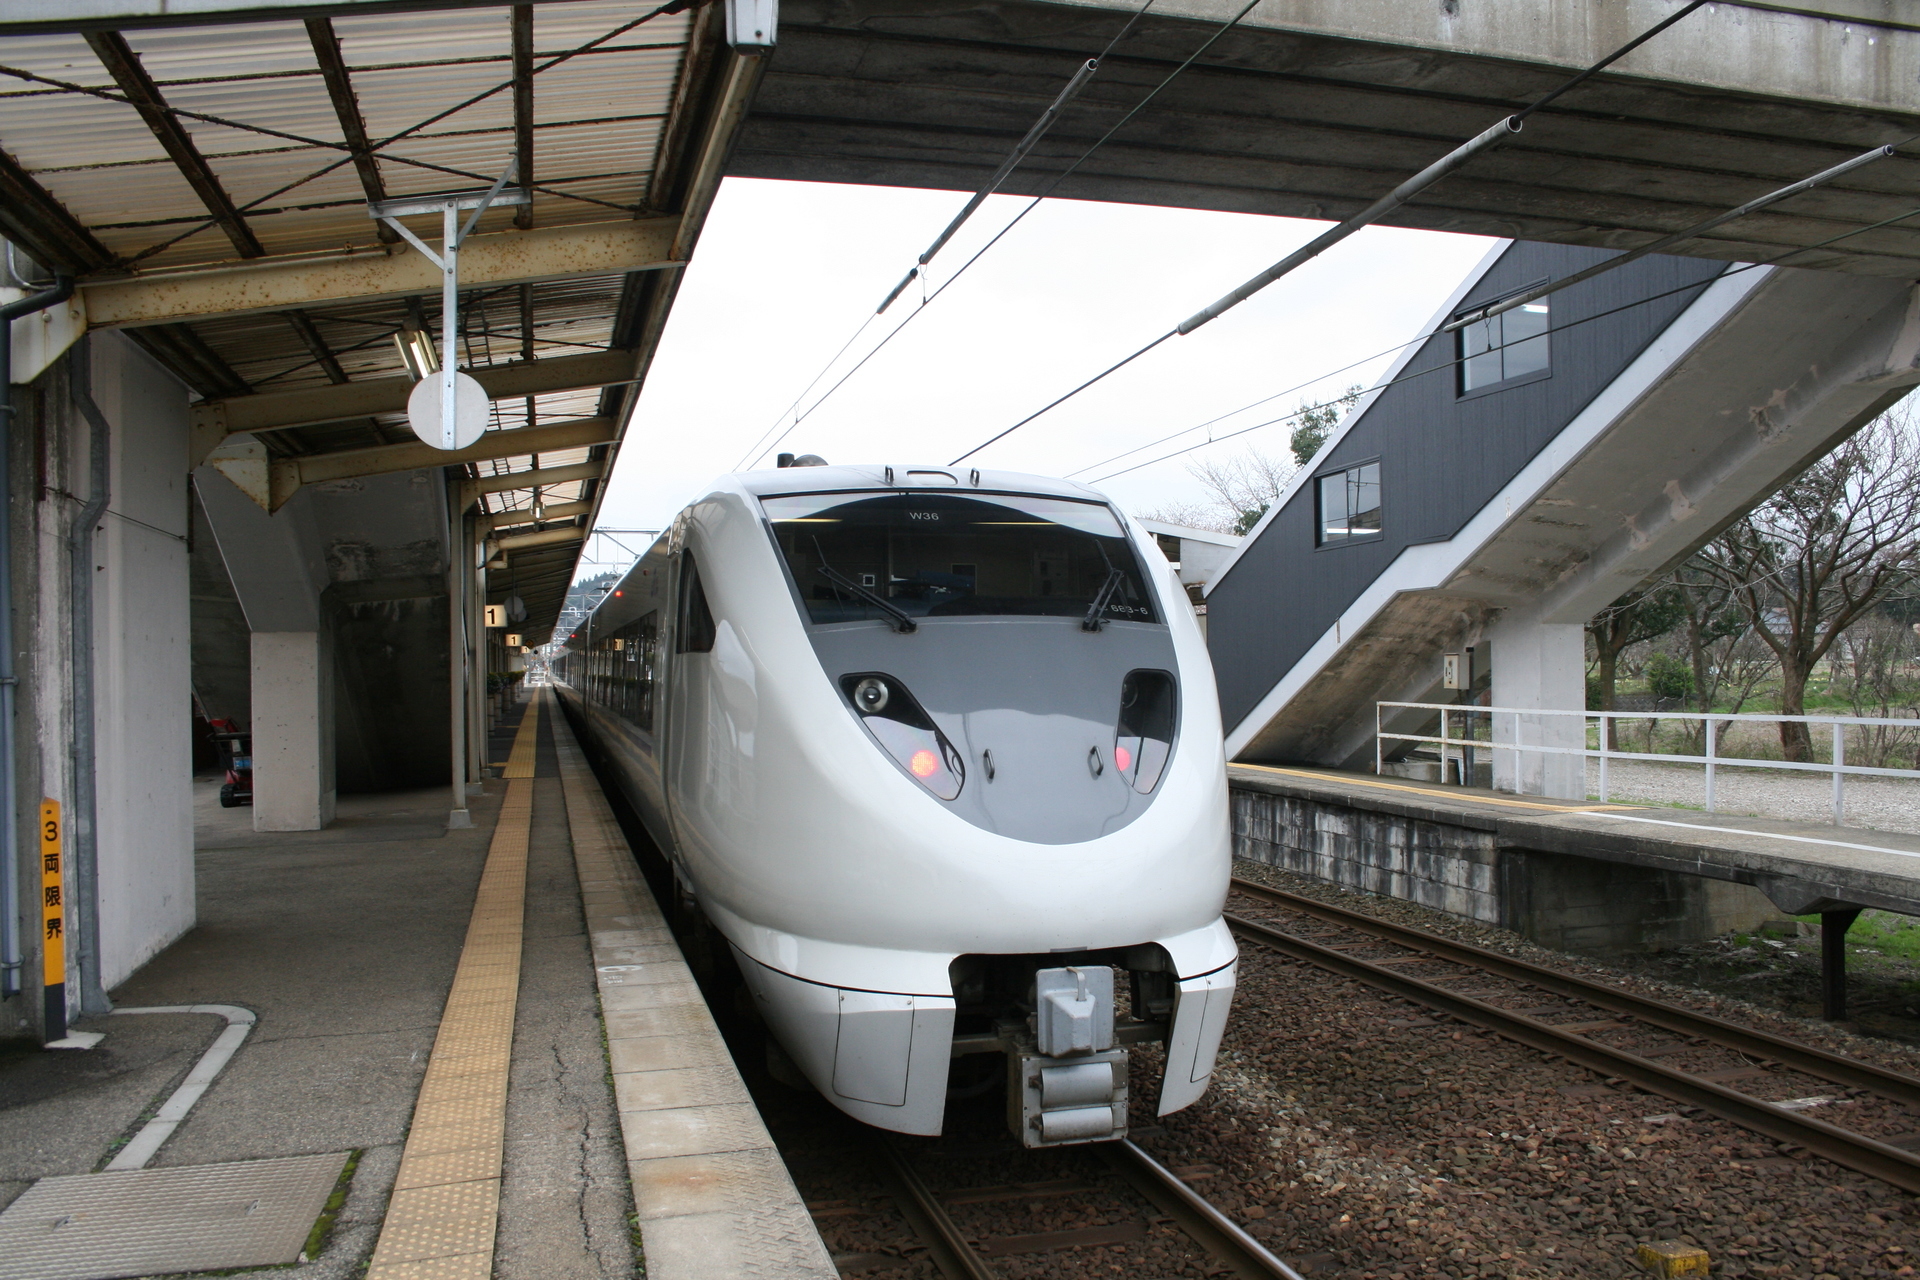 Jrの特急能登かがり火号 金沢と和倉温泉を結ぶ特急列車 Jr七尾線 Irいしかわ鉄道 沿線の見どころなど